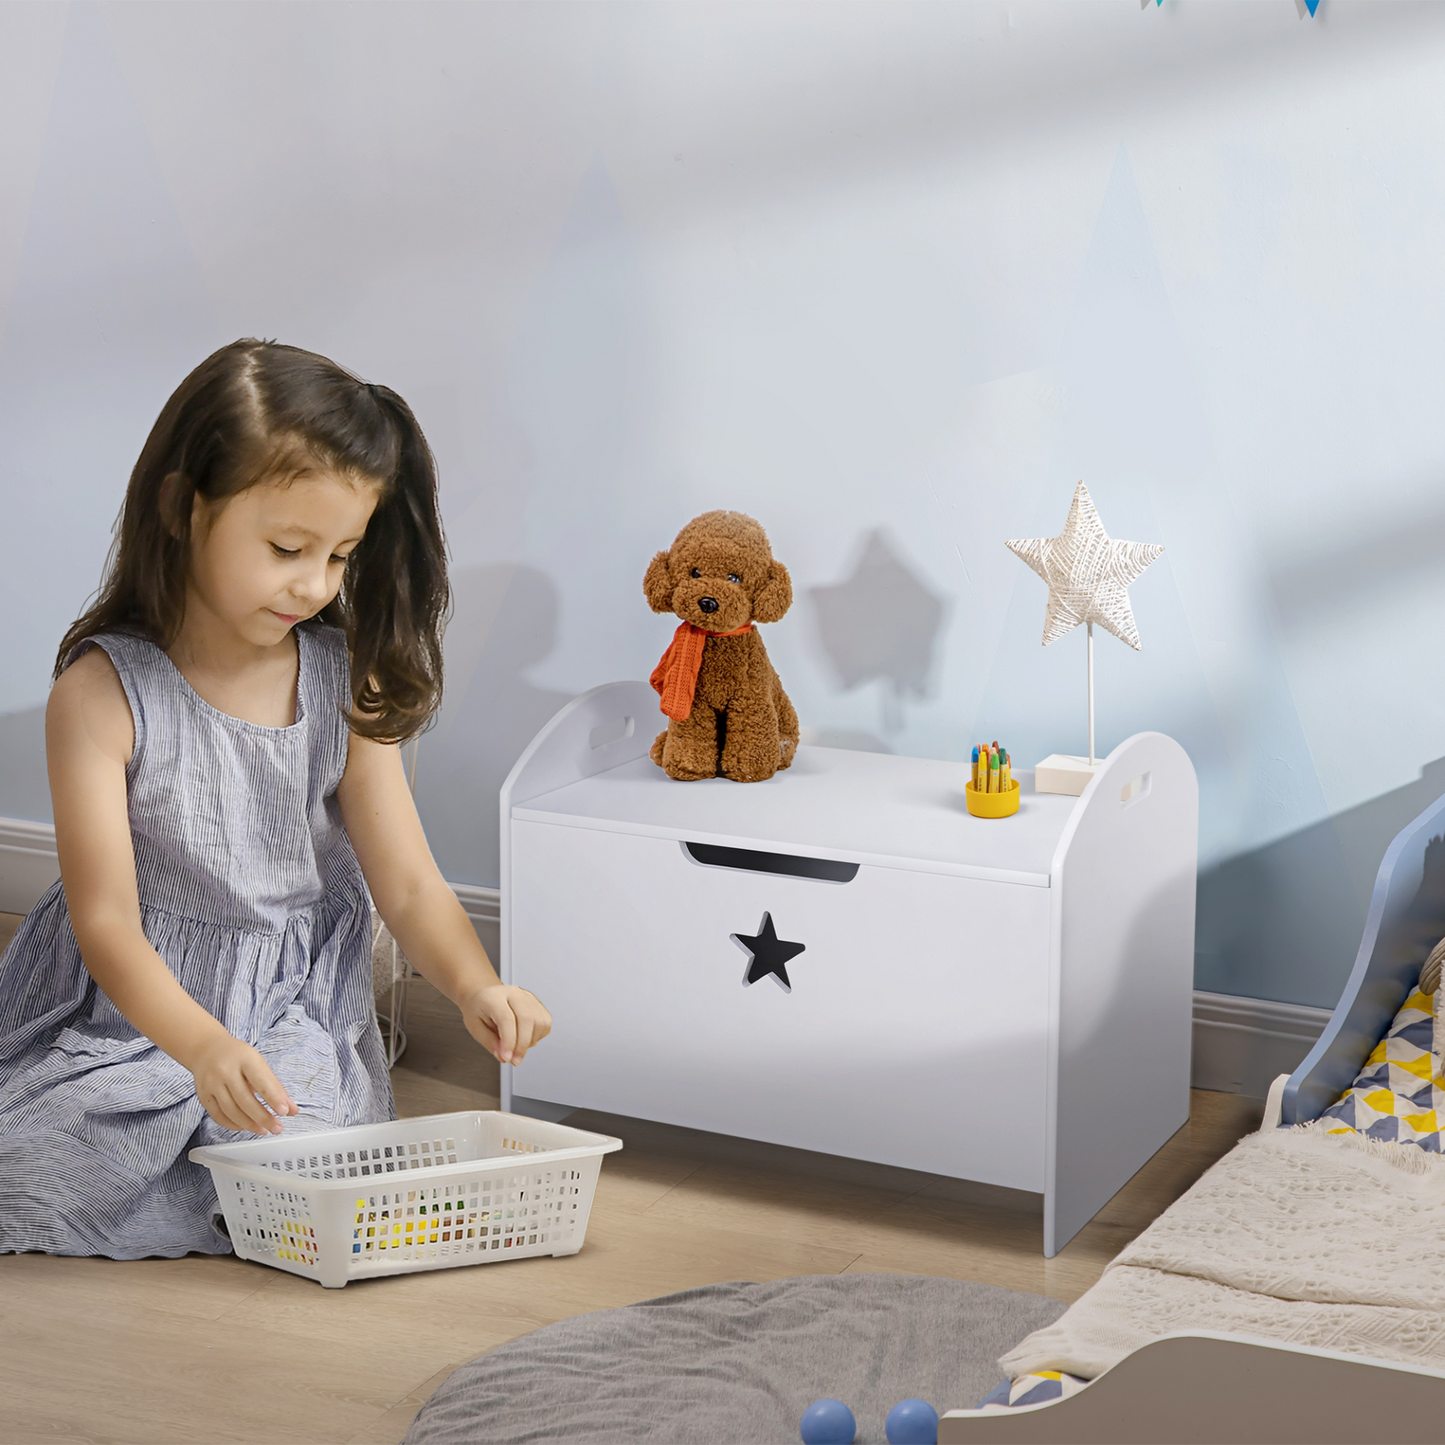 HOMCOM Kids Wooden Toy Children Box Storage Organizer Safety Hinge Side Handle Play Room Furniture White